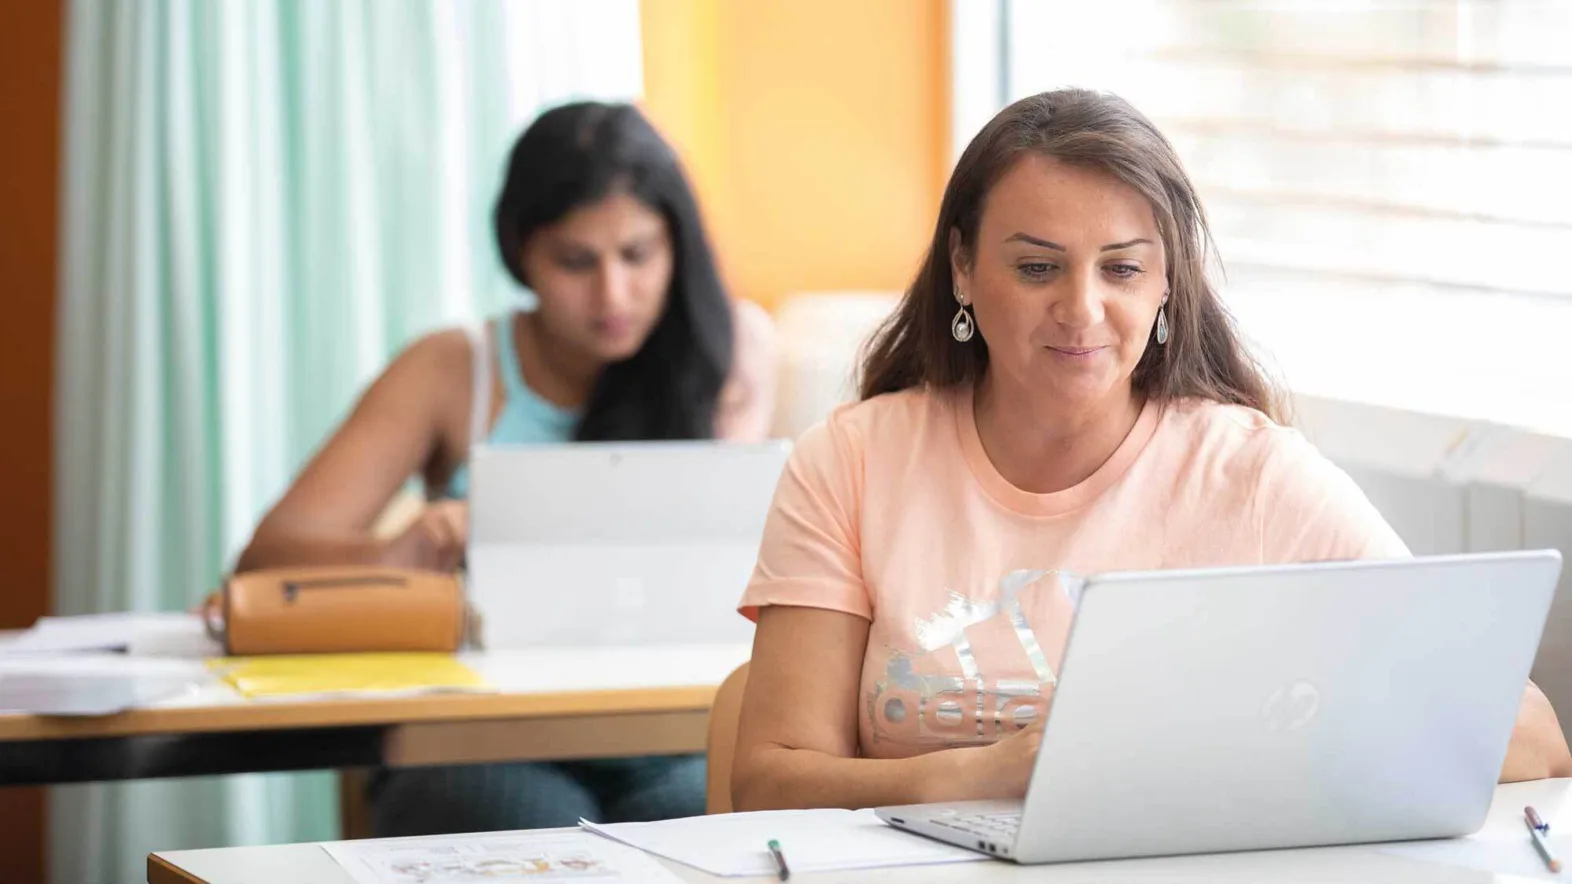 Zwei erwachsene Frauen in der Schule mit einem Laptop vor sich auf dem Schreibtisch.